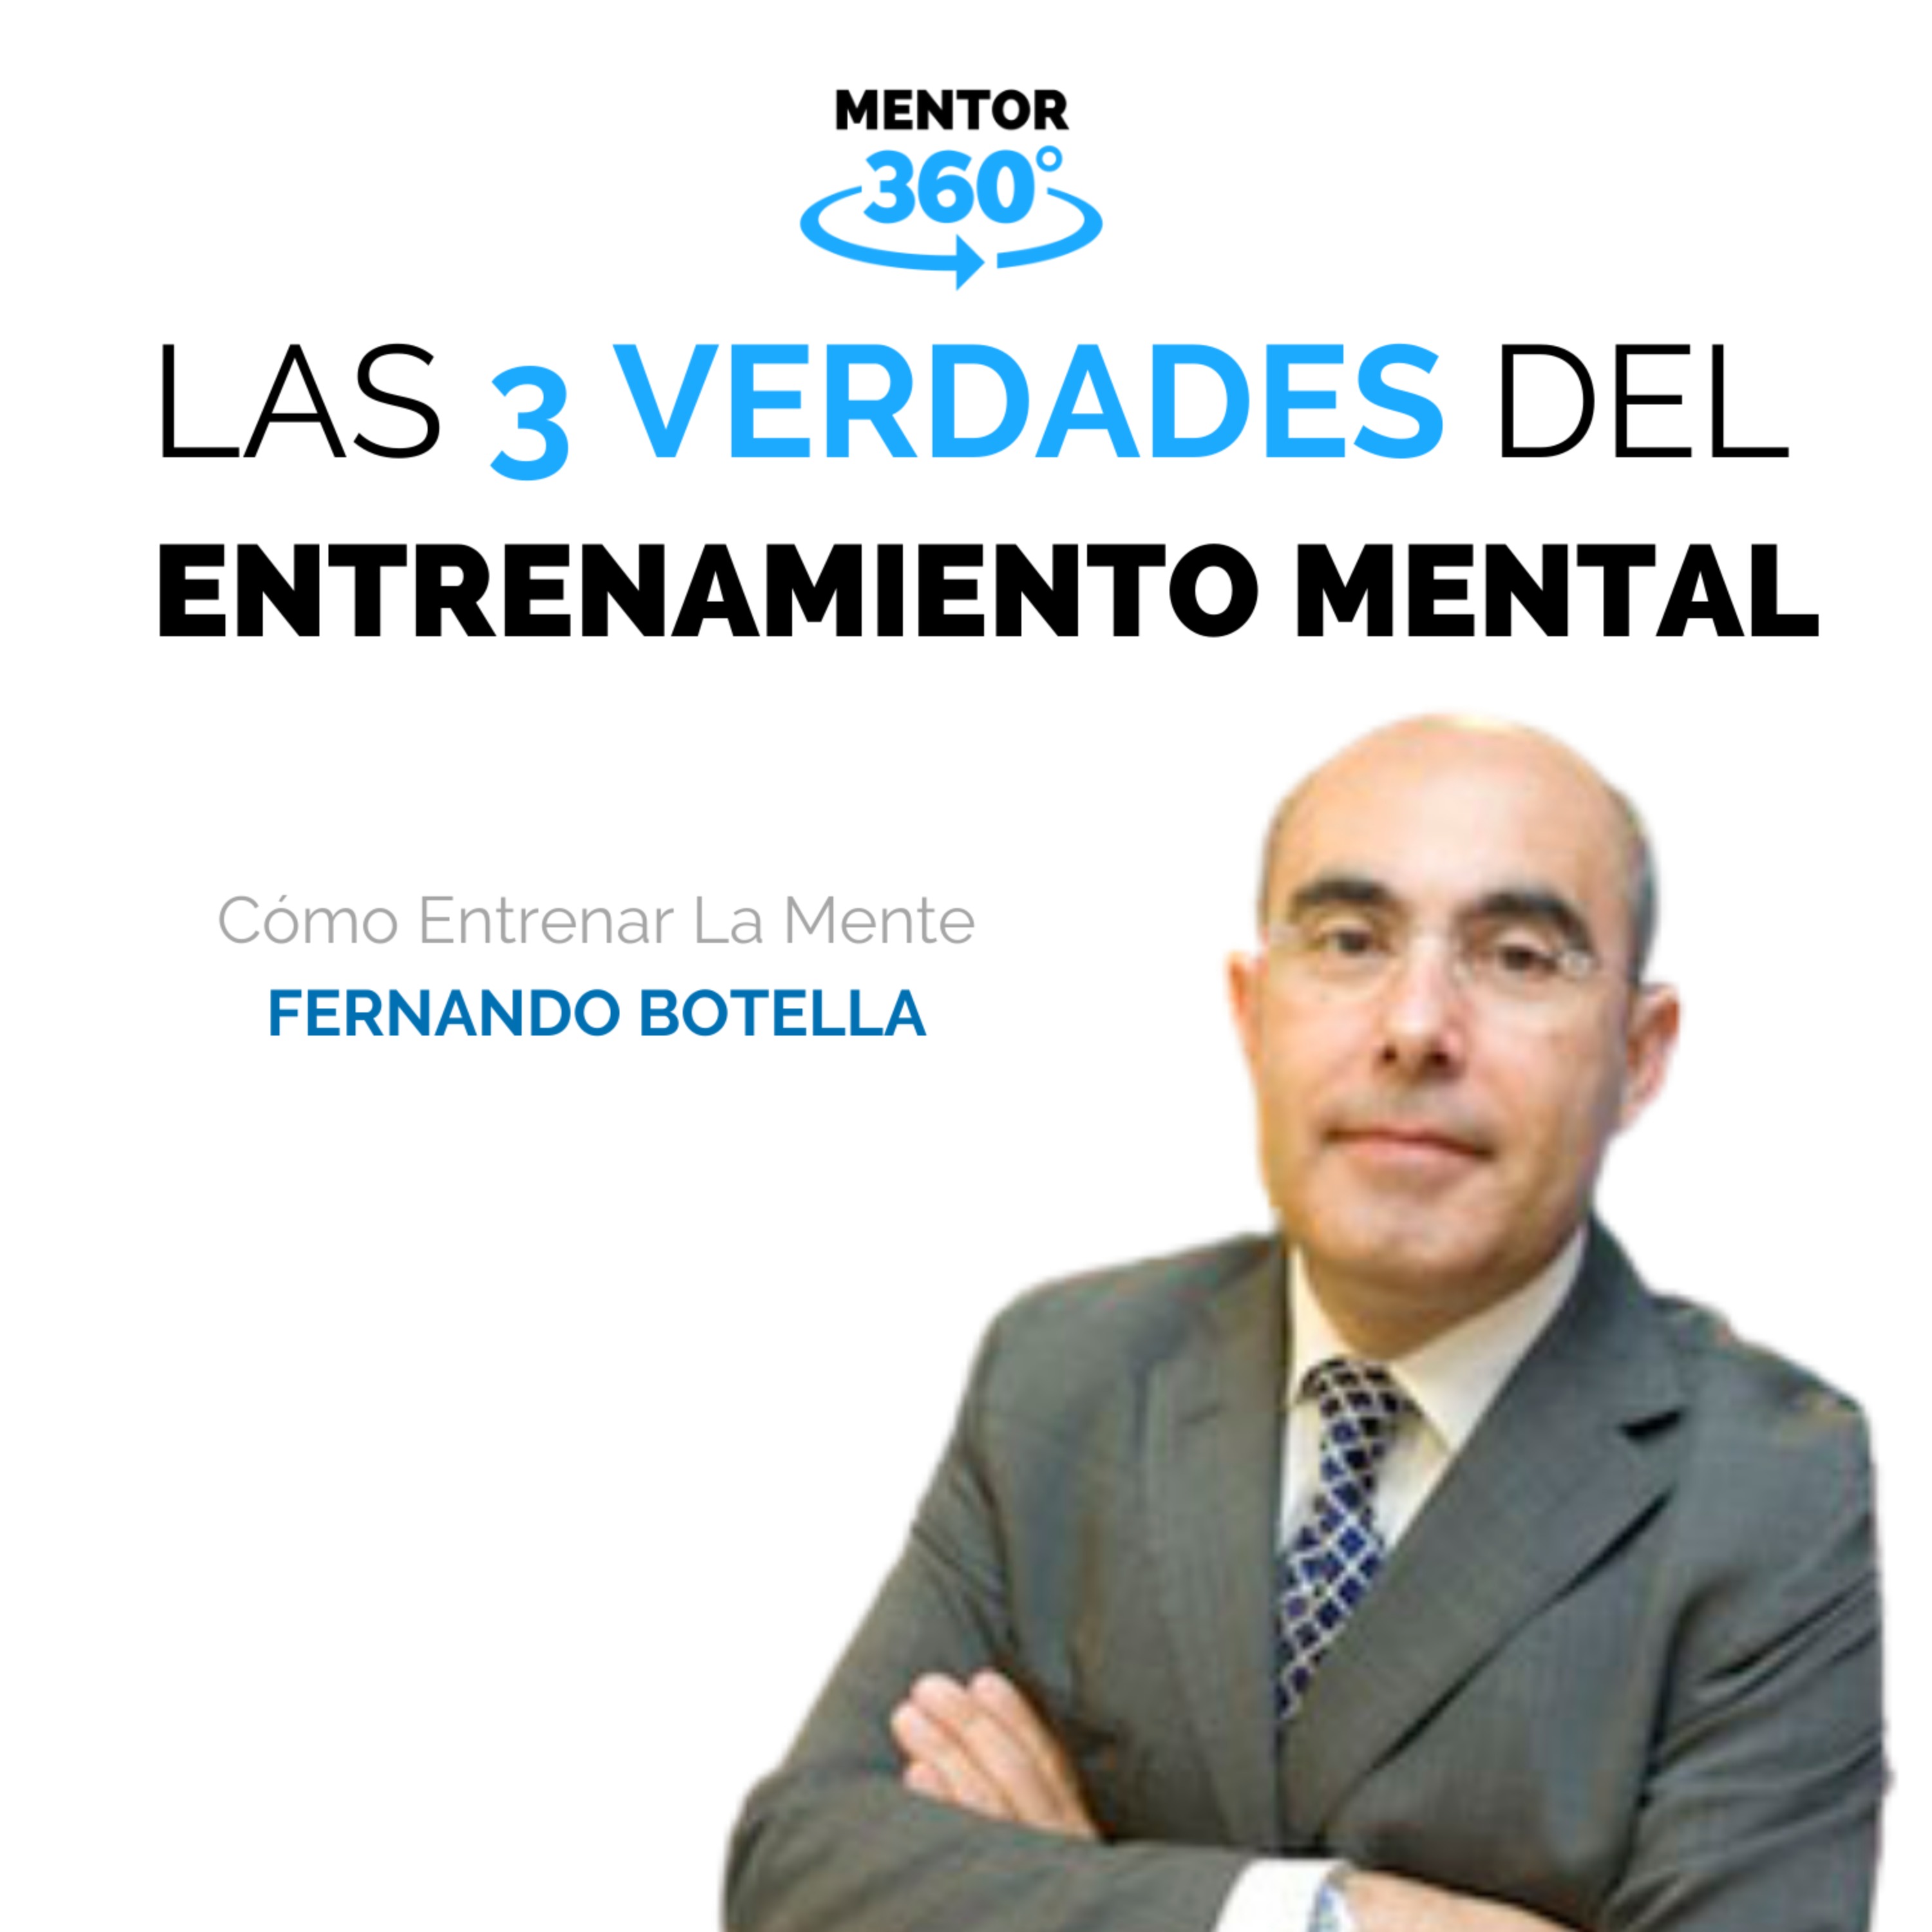 Las 3 Verdades Del Entrenamiento Mental - Cómo Entrenar La Mente - Fernando Botella - MENTOR360